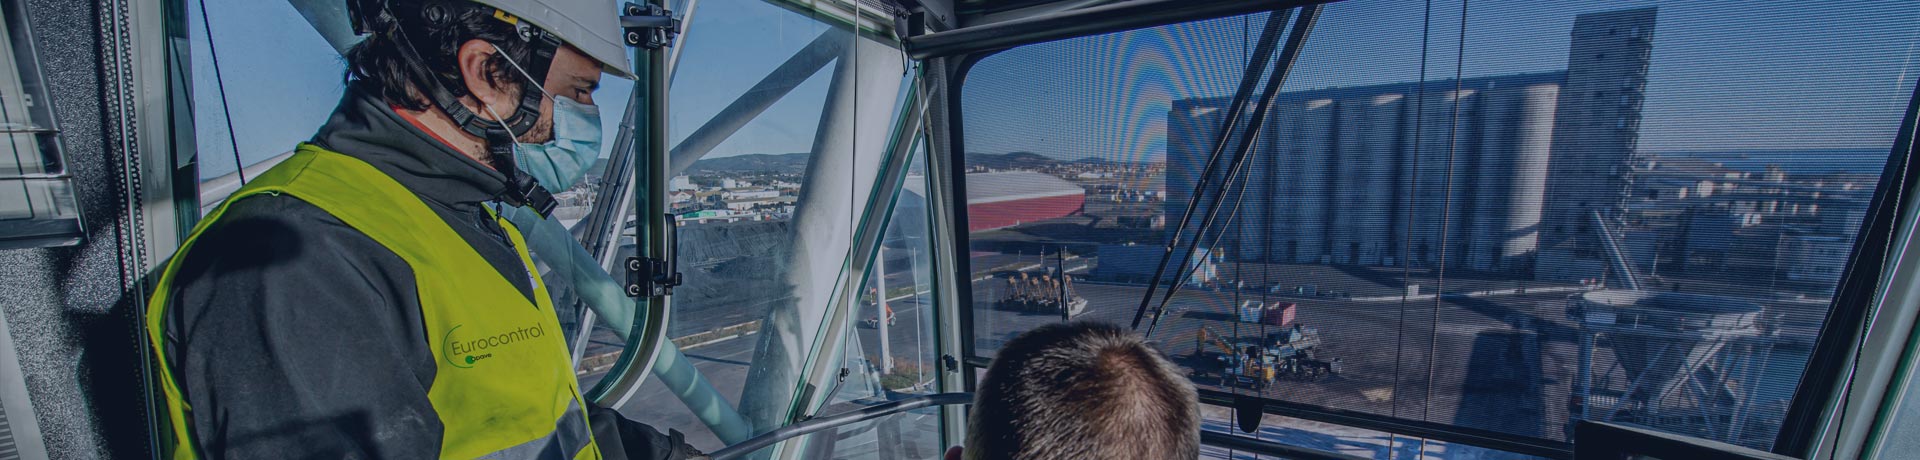 Empleado de Eurocontrol acompañando a un cliente en un trabajo de control en una grúa portuaria